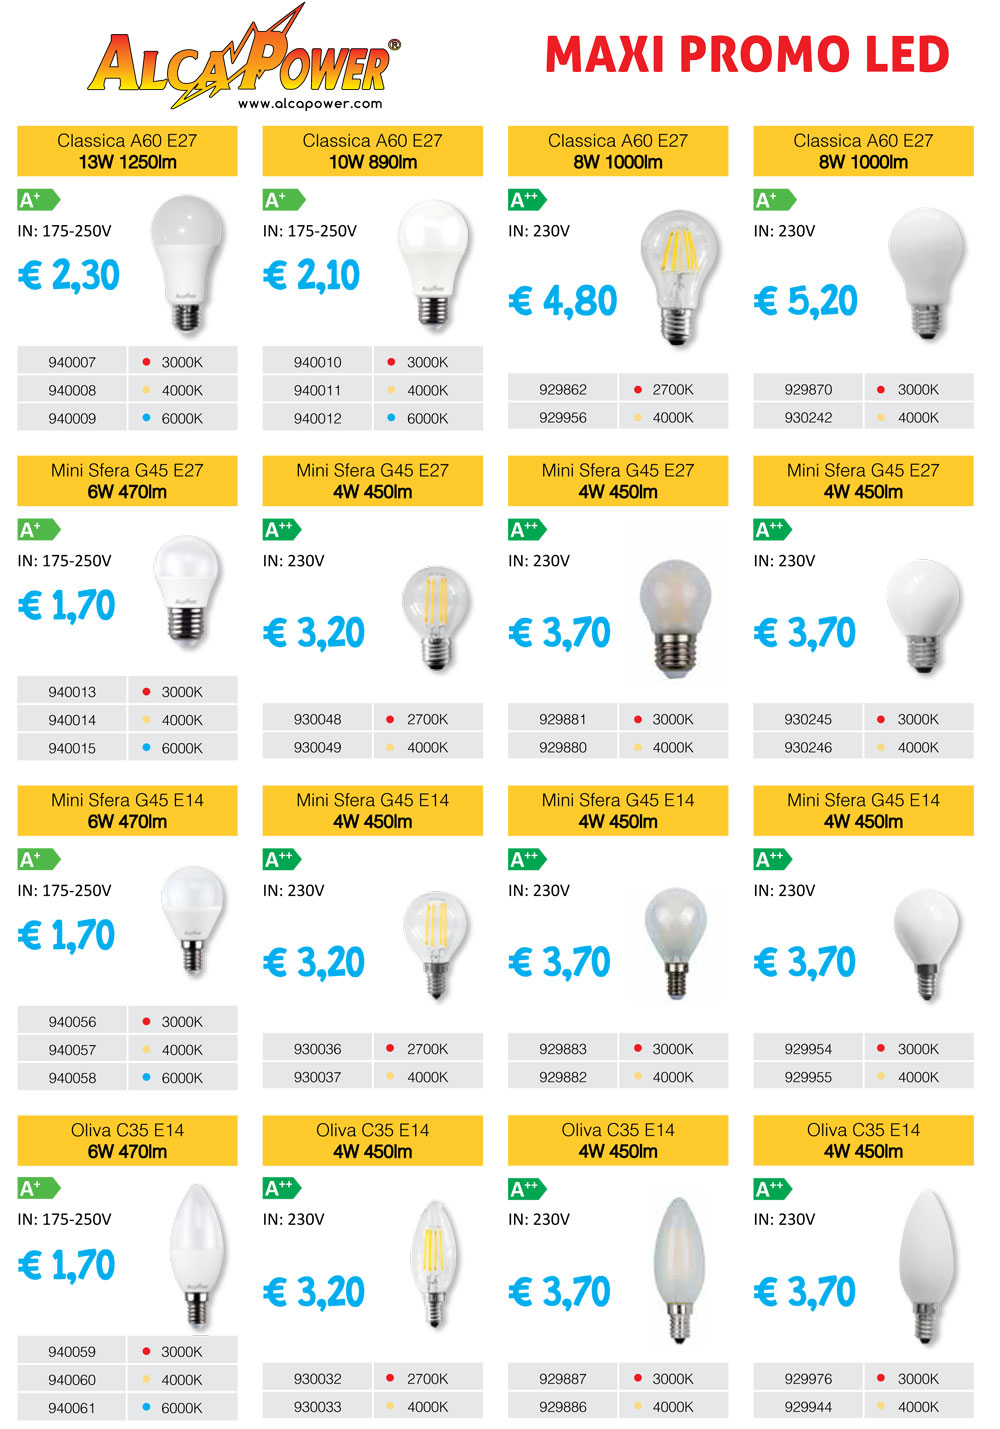 Electronic Megastore | Non perdere l'occasione prodotti LED alta qualità Alcapower garanzia italiana Contattati per qualsiasi info promo LED